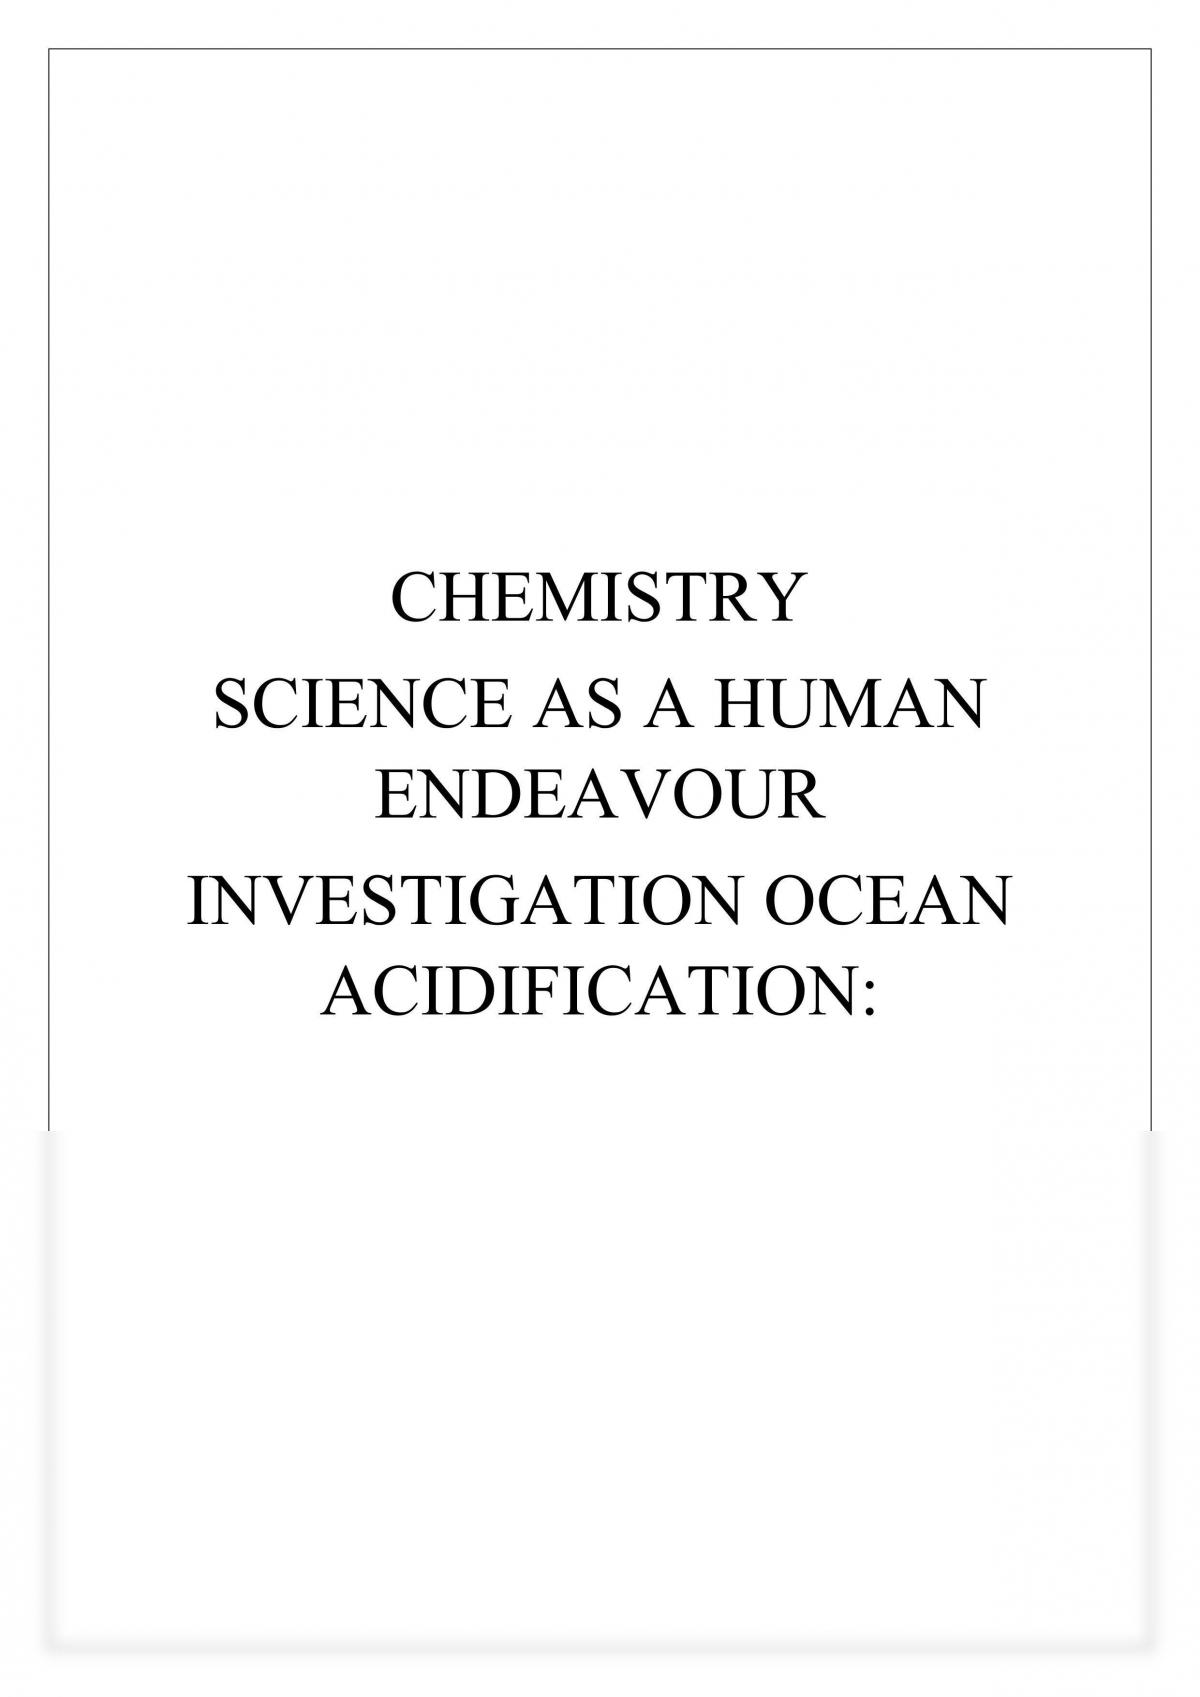 she-task-ocean-acidification-chemistry-year-11-sace-thinkswap